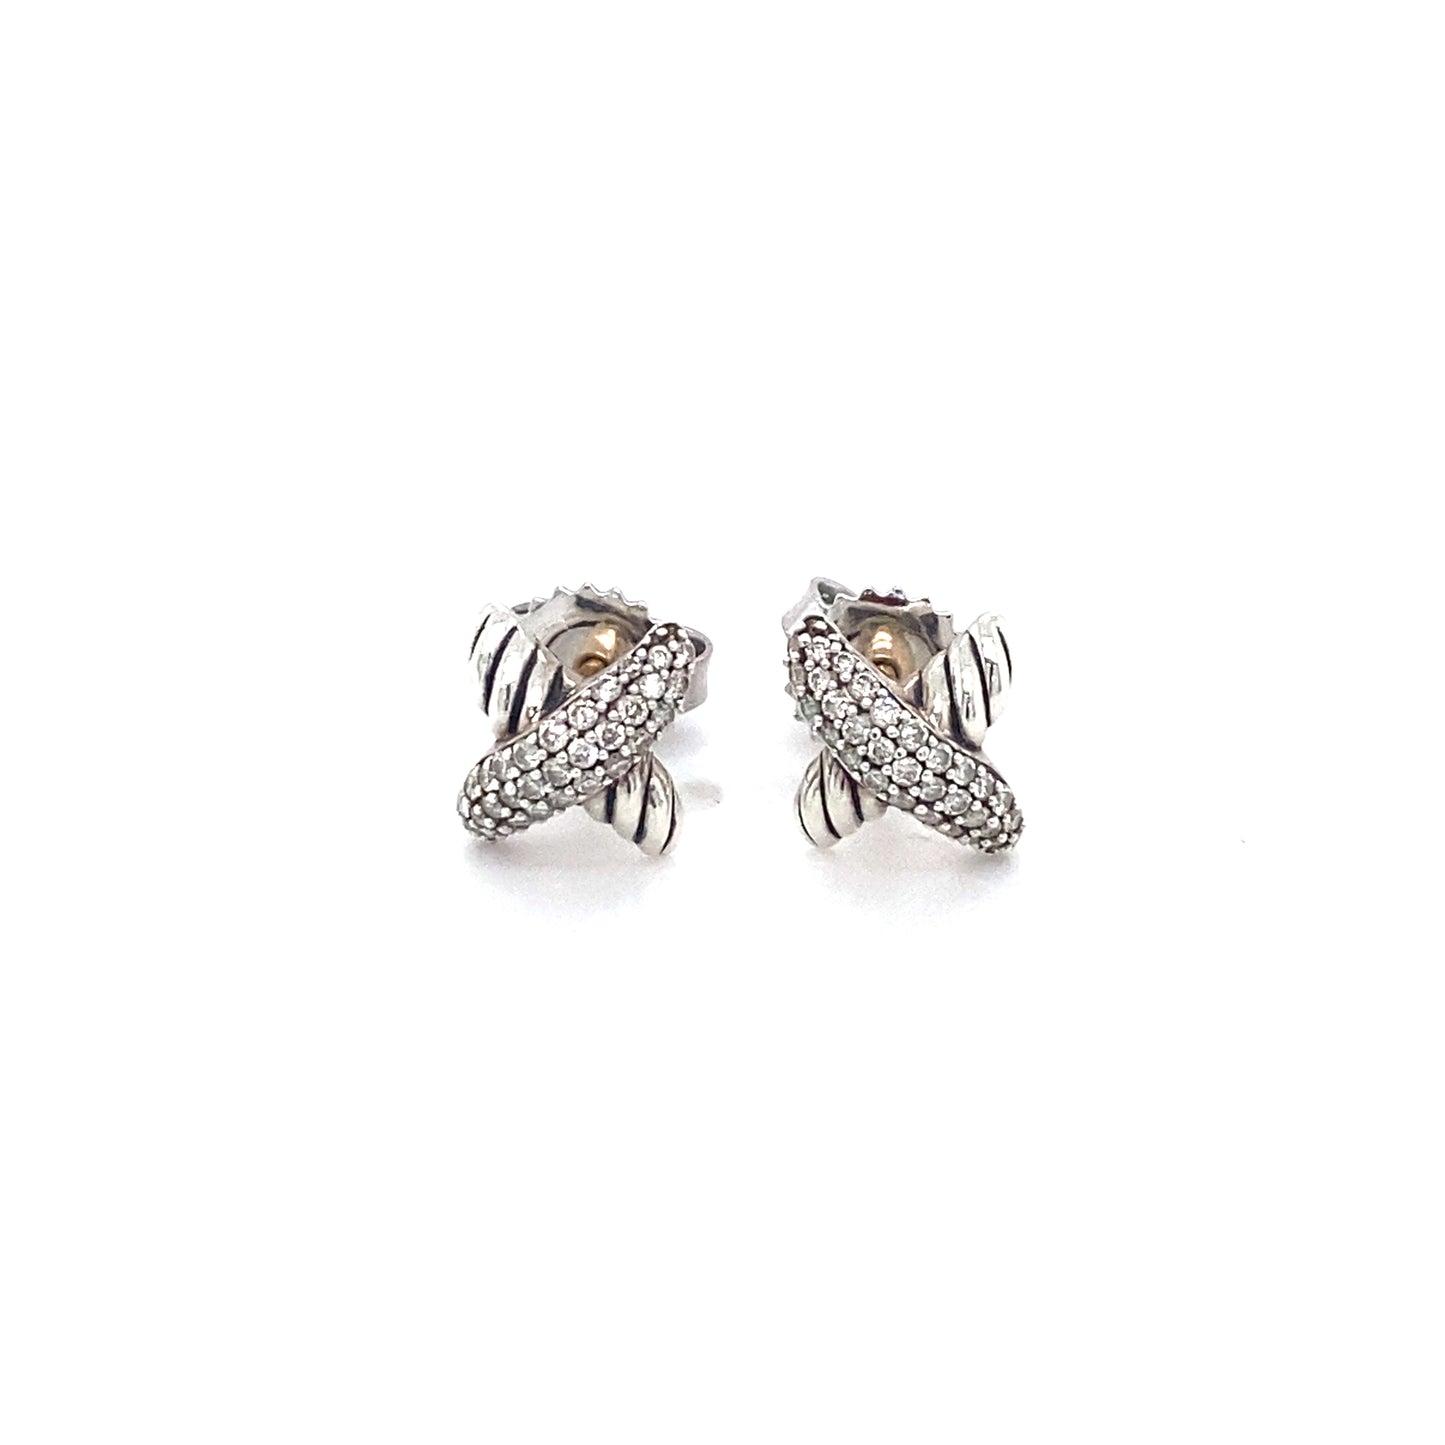 DAVID YURMAN X Stud Earrings with Diamonds in Sterling Silver